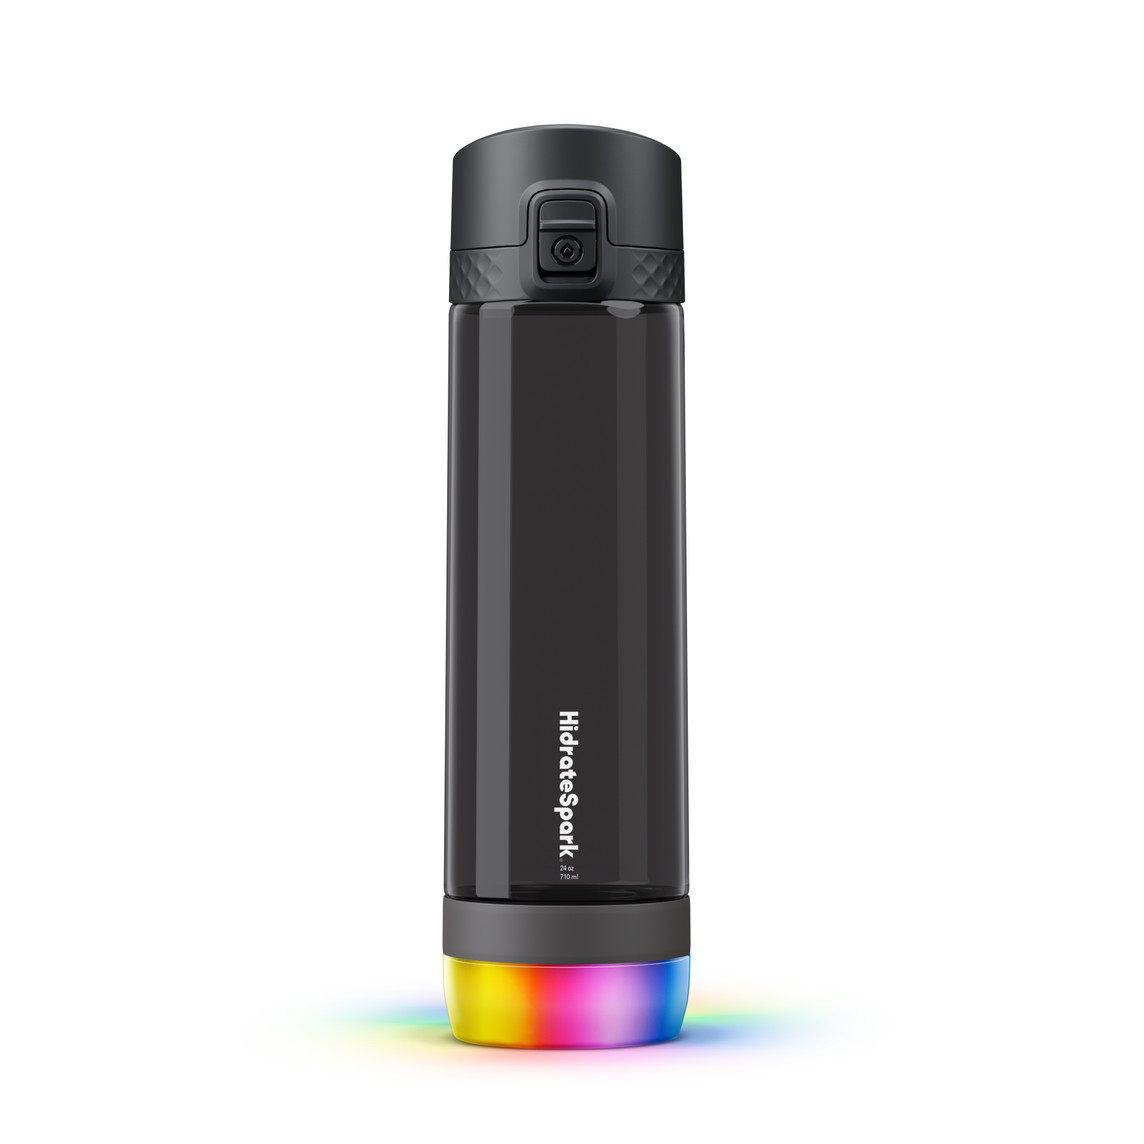 Inteligentna butelka na wodę z tworzywa sztucznego Hi-drateSpark PRO Titan (710 ml) w kolorze czarnym jest odporna na pękanie i izolowana próżniowo, przez co utrzymuje niską temperaturę napojów nawet do 24 godzin.